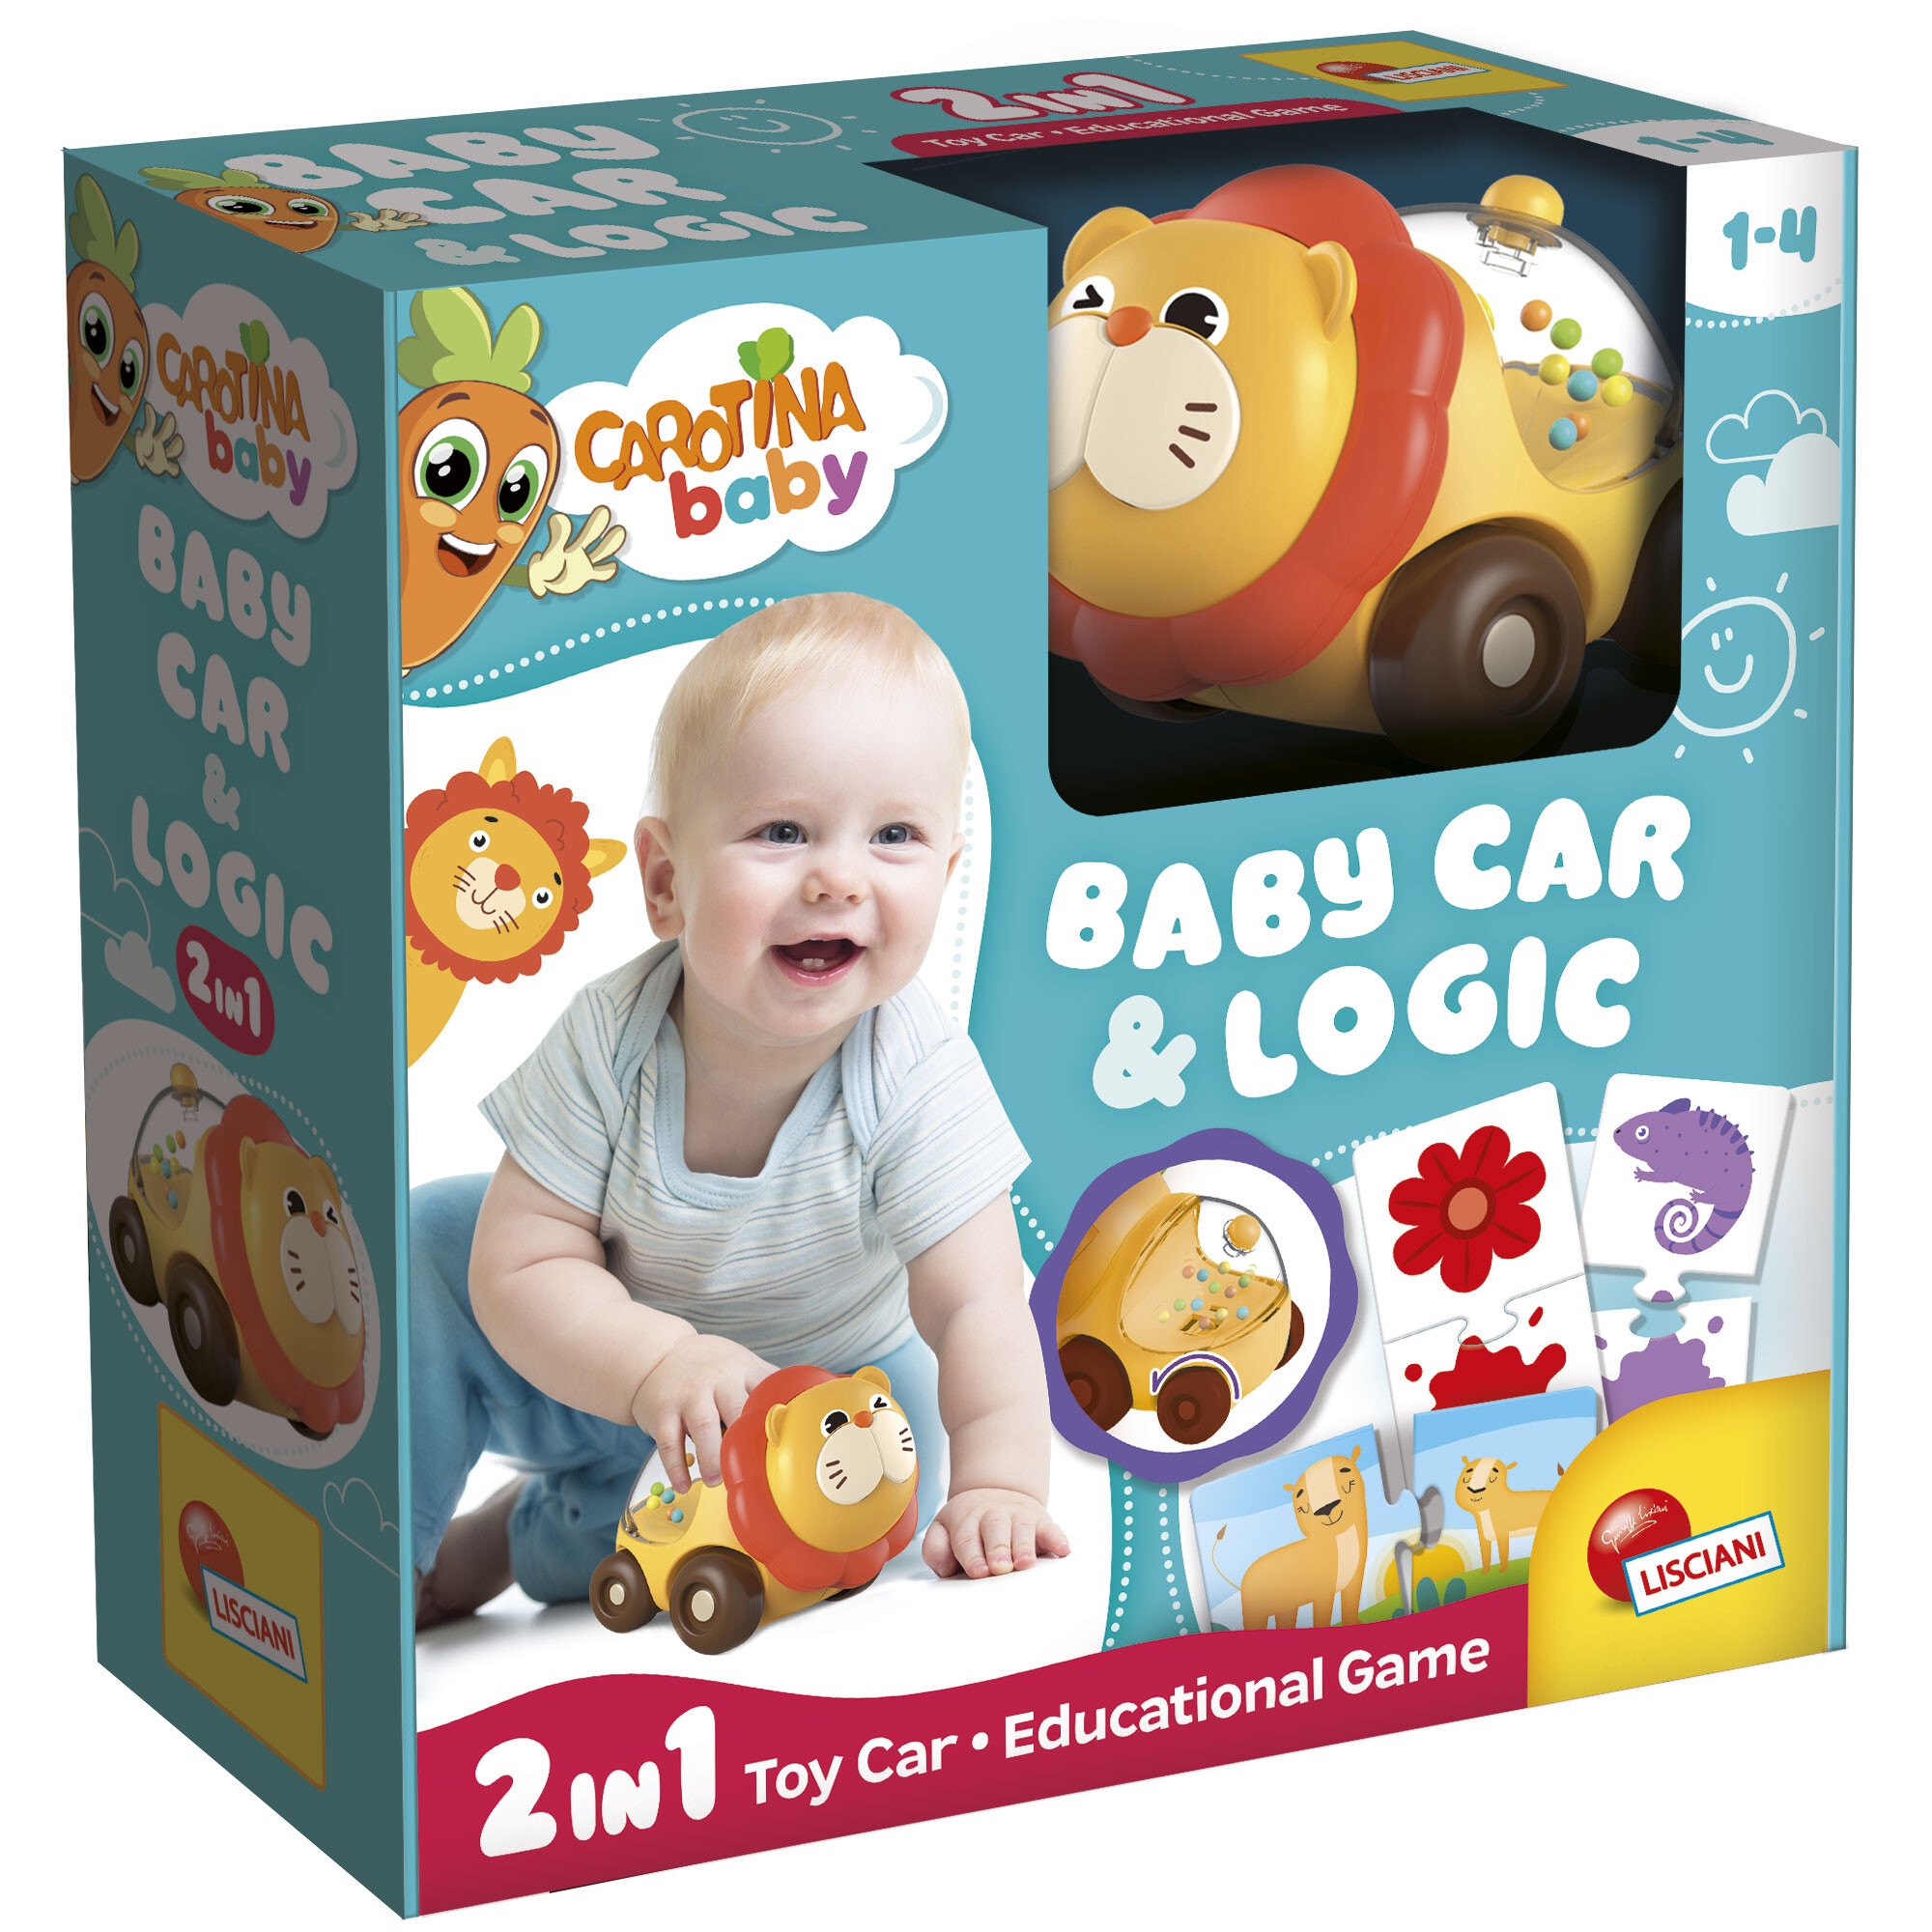 Carotina baby lion car & logic - 